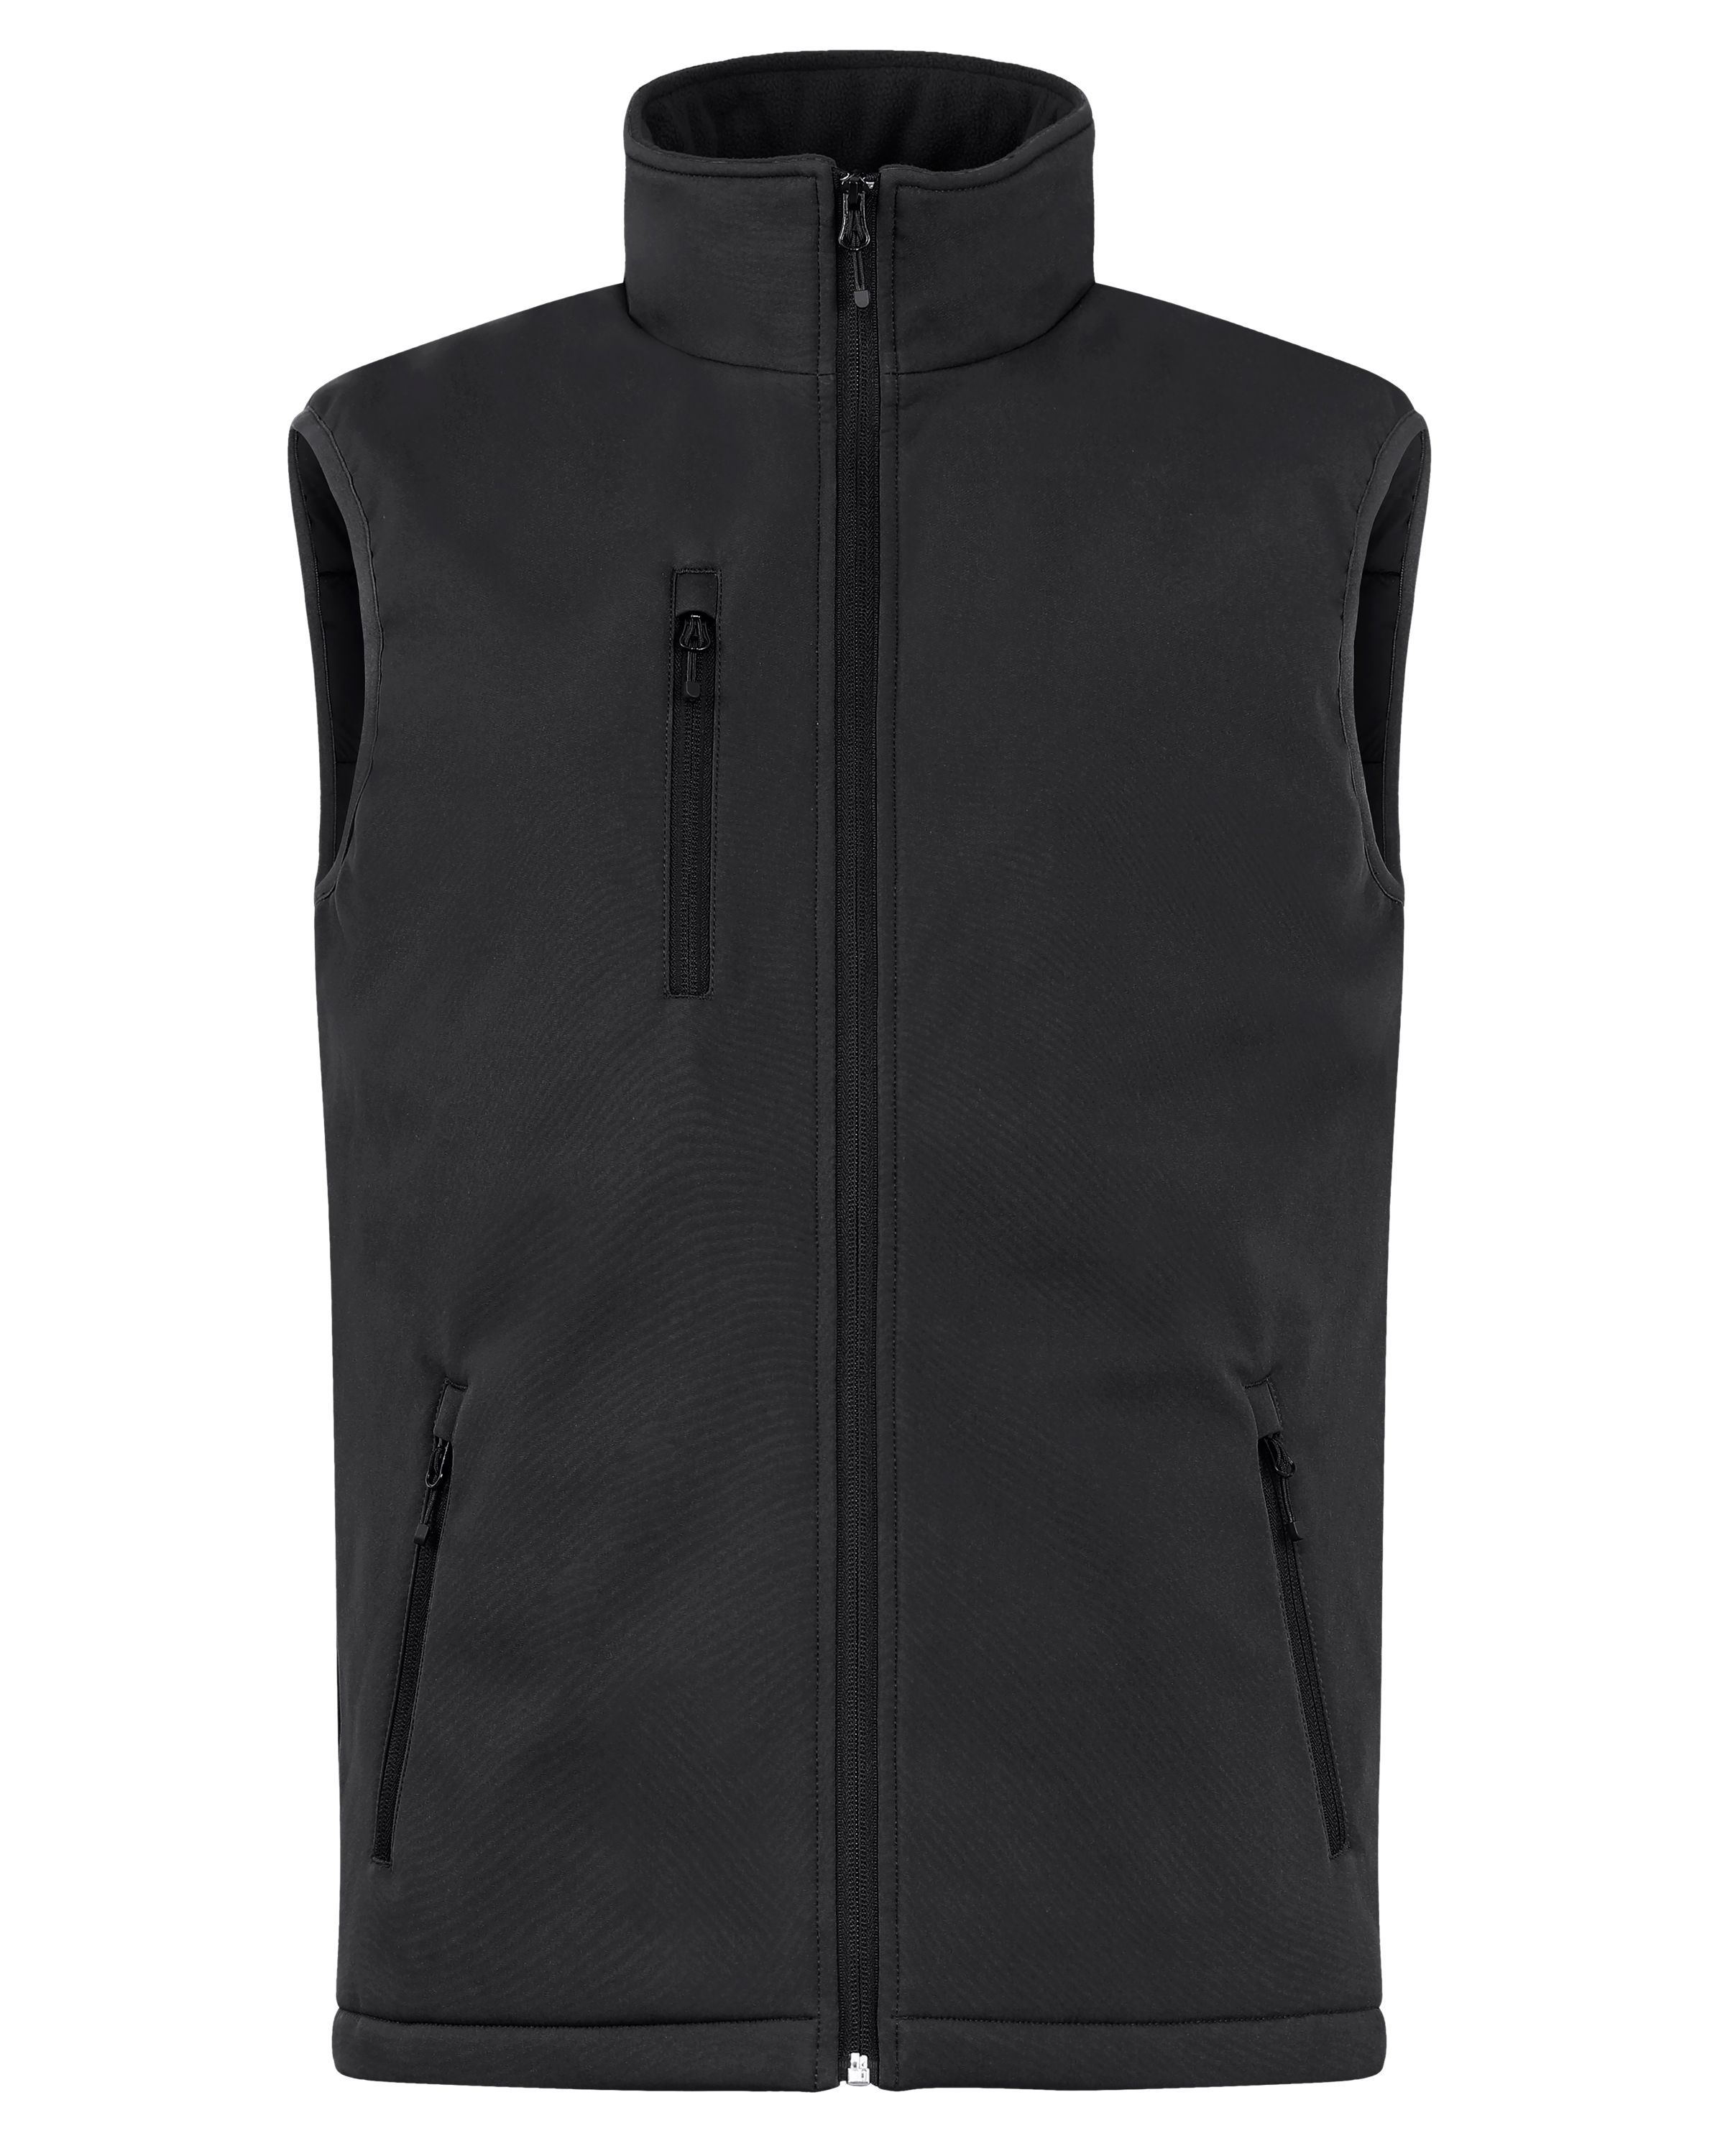 Clique Equinox Insulated Mens Softshell Vest-